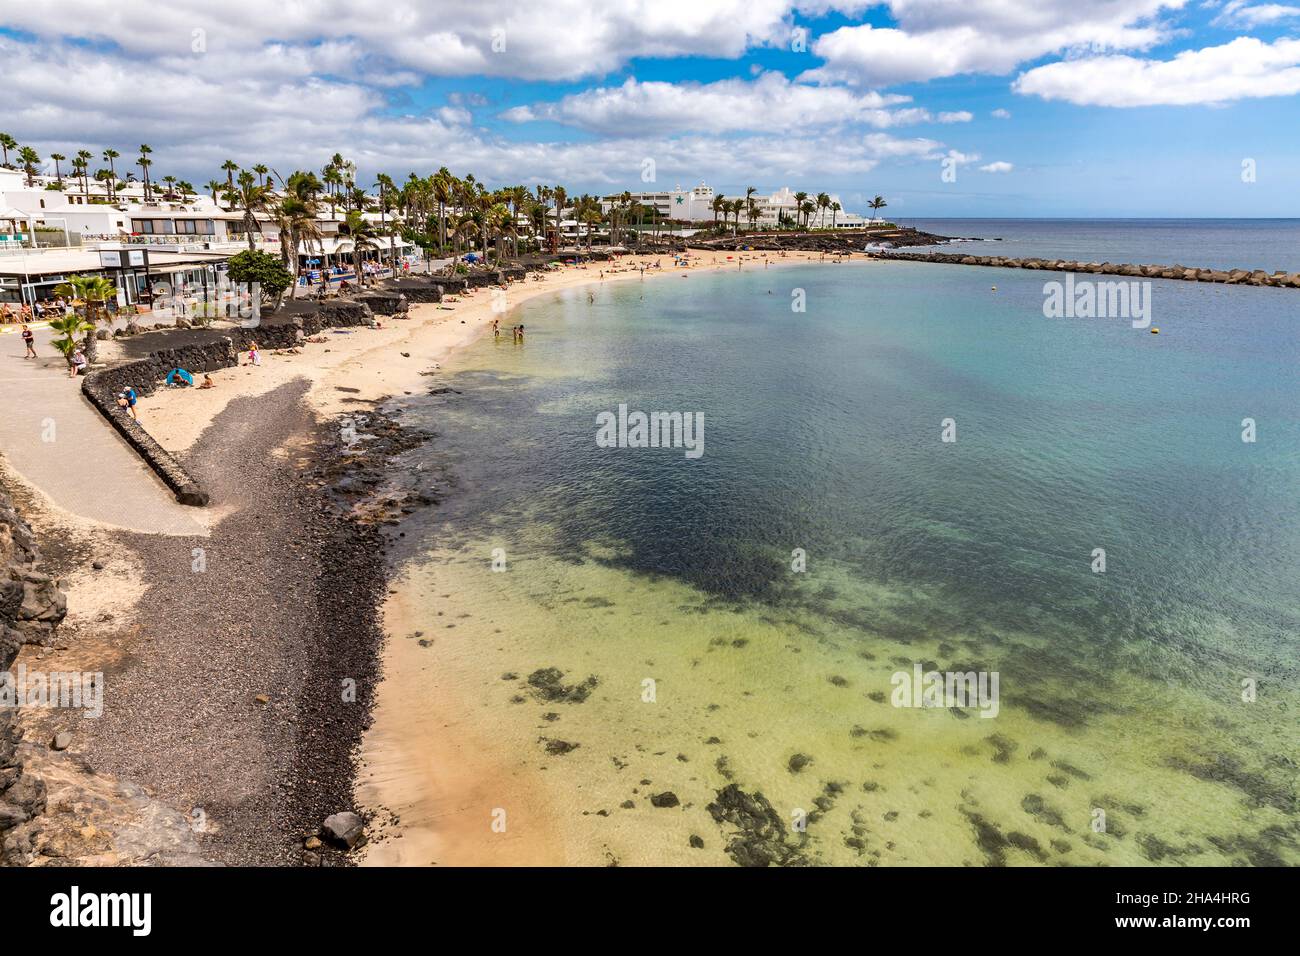 Der Strand playa Flamingo, playa blanca, Pier, lanzarote, Kanaren, kanarische Inseln, spanien, europa Stockfoto